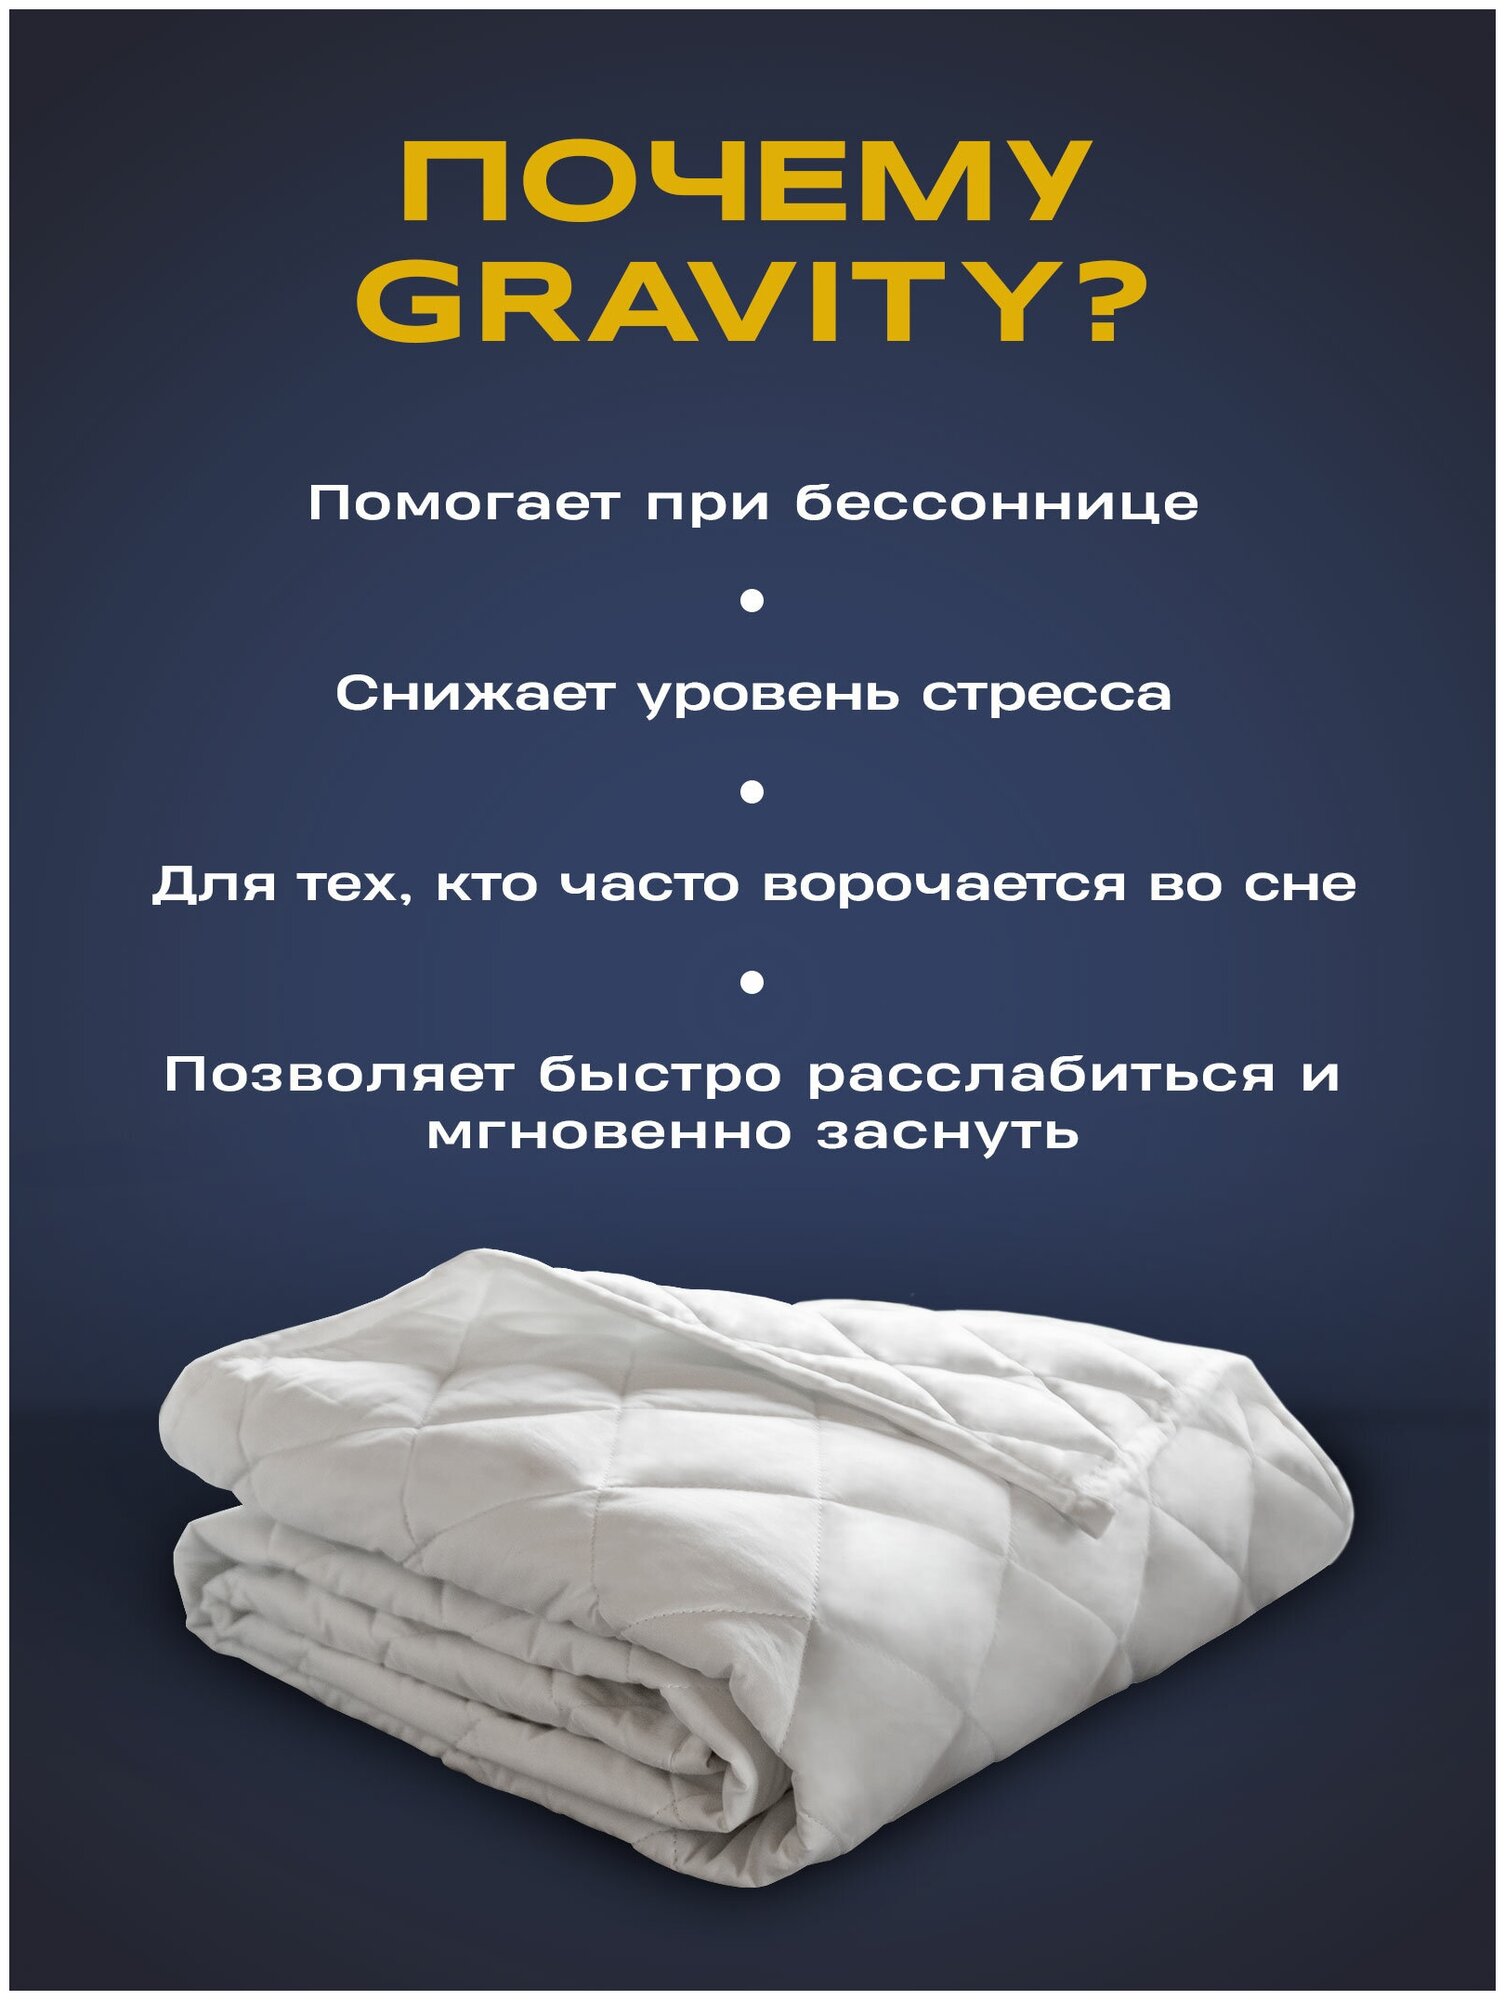 Утяжеленное одеяло Gravity (Гравити) Wellina, 140x205 см. белое 8 кг./ Сенсорное одеяло Gravity 140 x 205 см. / Тяжелое одеяло 8 кг. - фотография № 2